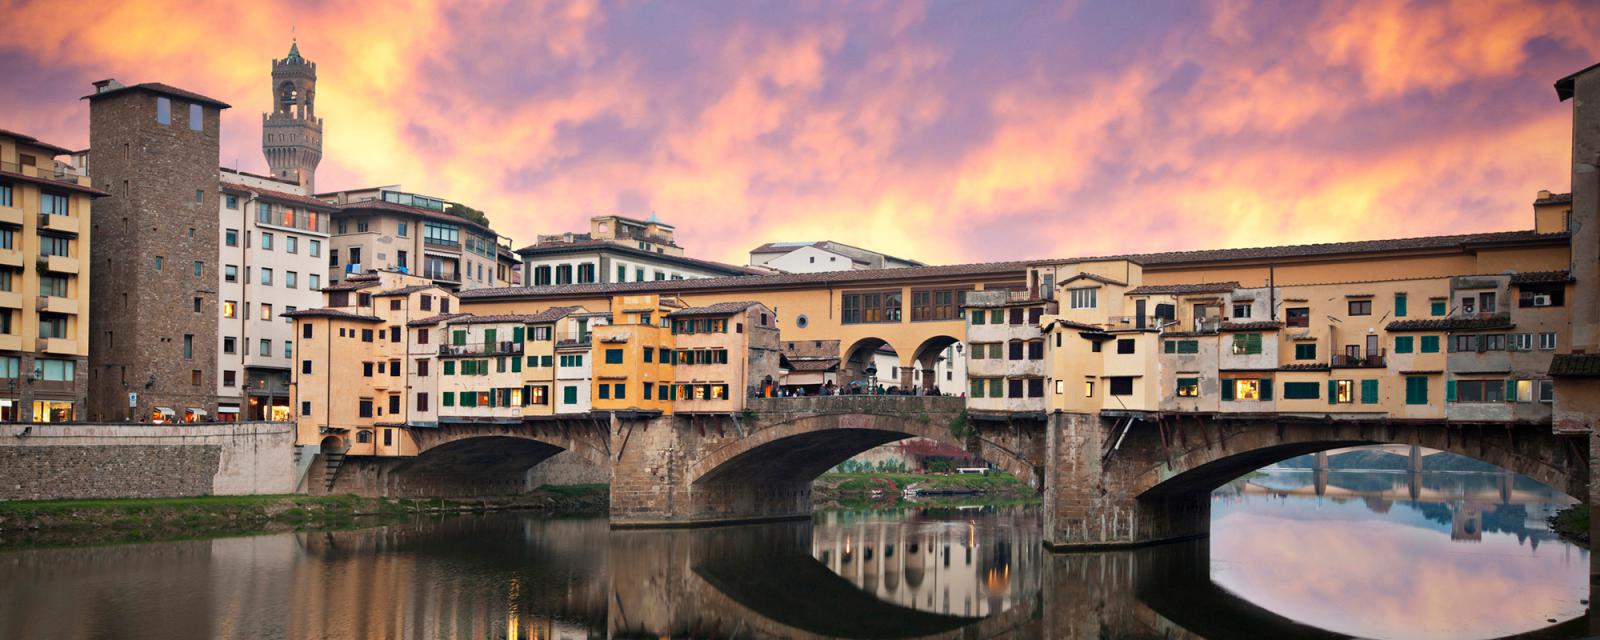 Alles wat je moet weten voor je stedentrip naar Florence! 